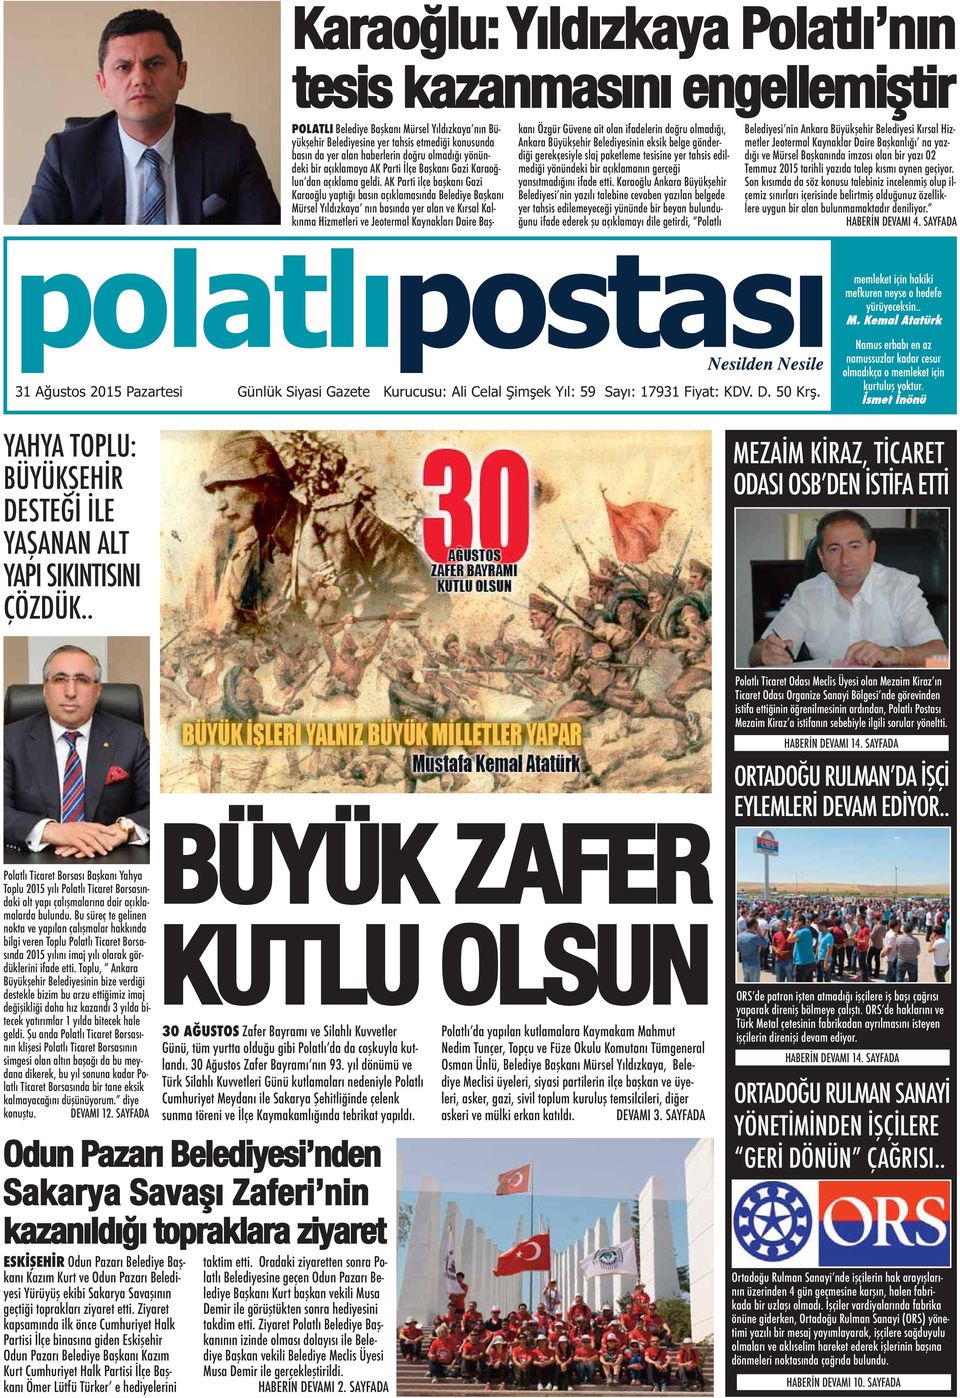 AK Parti ilçe başkanı Gazi Karaoğlu yaptığı basın açıklamasında Belediye Başkanı Mürsel Yıldızkaya nın basında yer alan ve Kırsal Kalkınma Hizmetleri ve Jeotermal Kaynakları Daire Başkanı Özgür